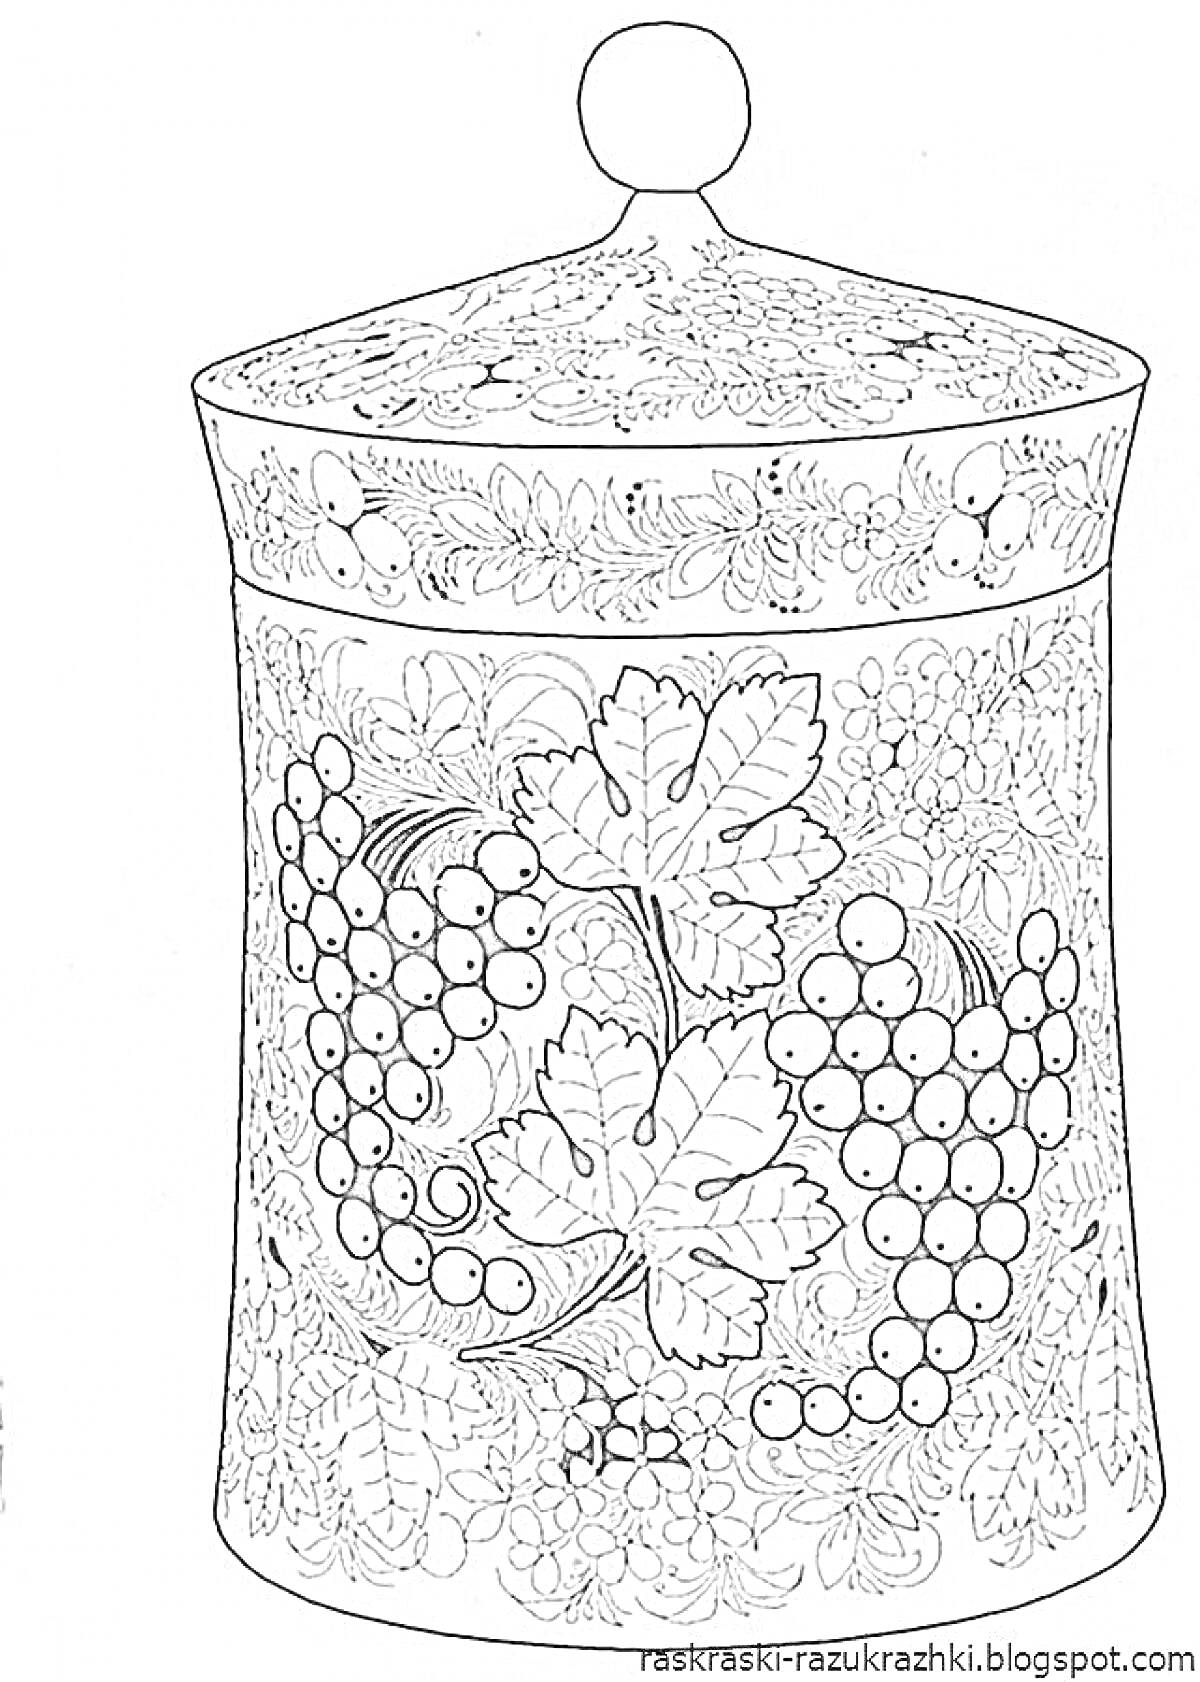 Раскраска Узор хохлома на банке с крышкой с изображением винограда, листьев и цветов